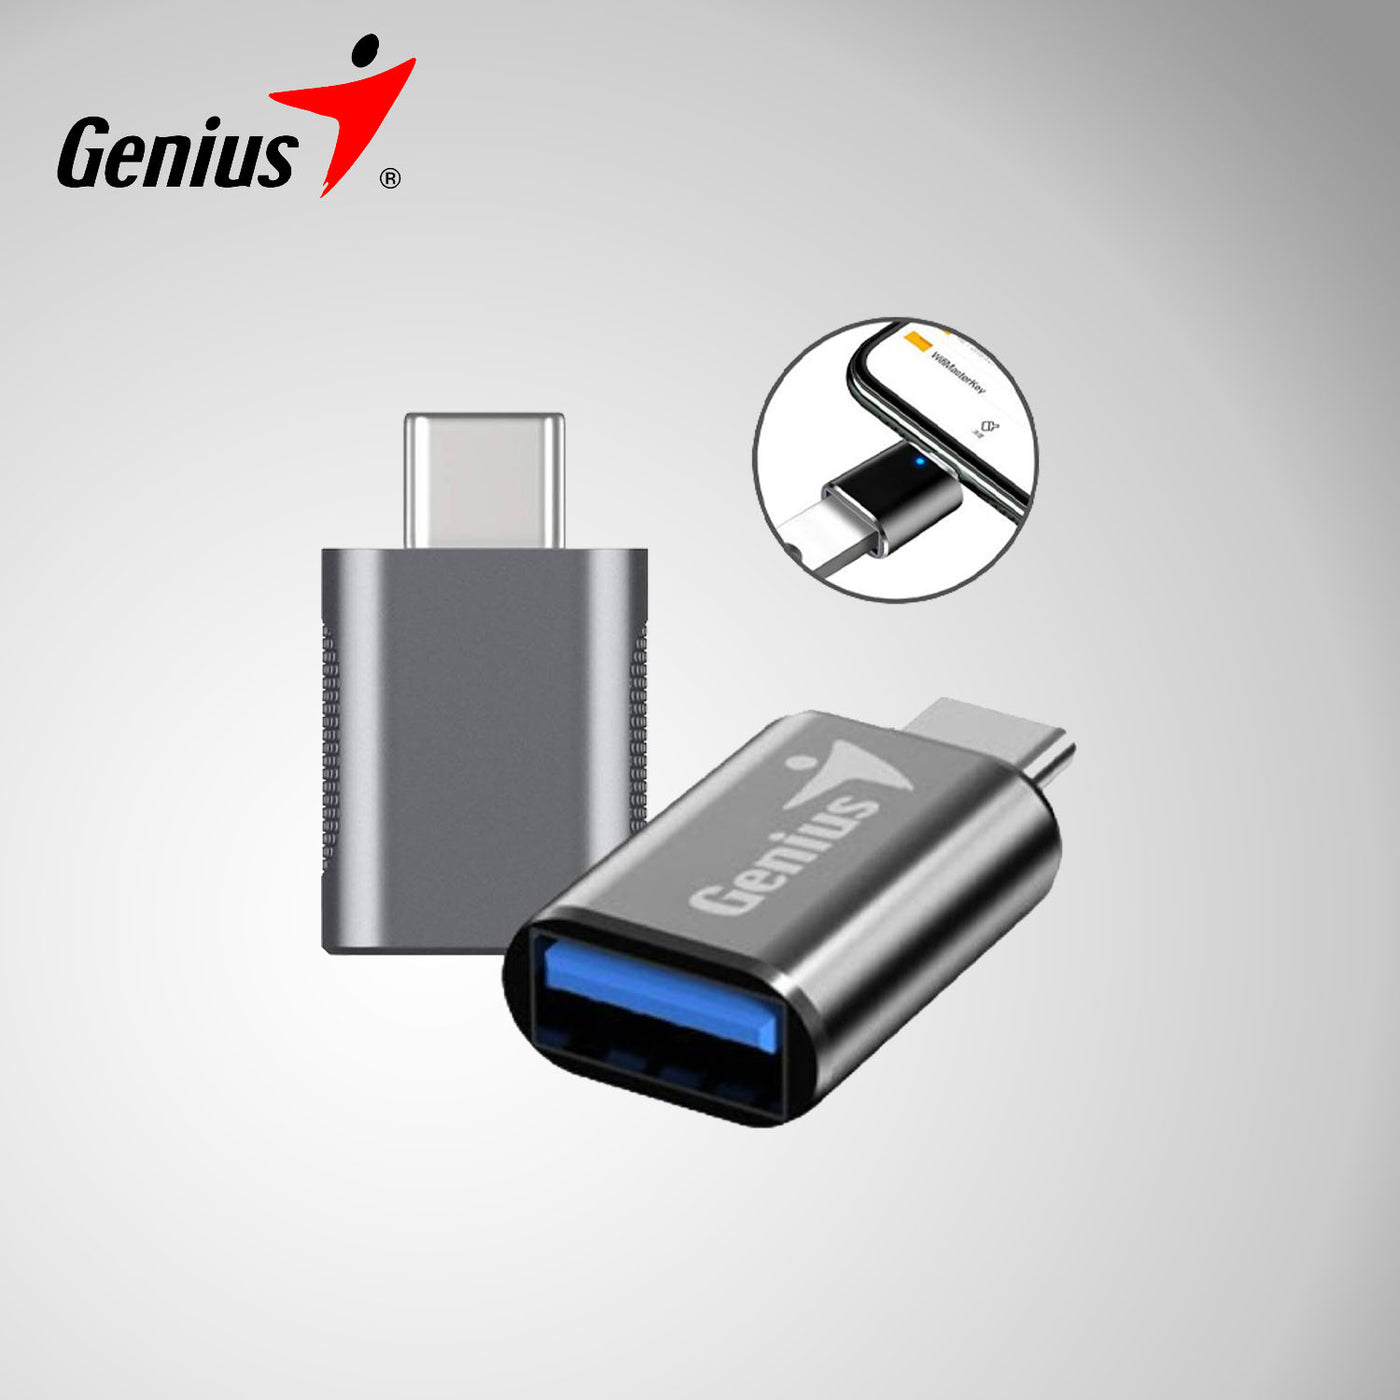 ADAPTADOR GENIUS ACC-C2A USB-C A USB-A DARK GREY